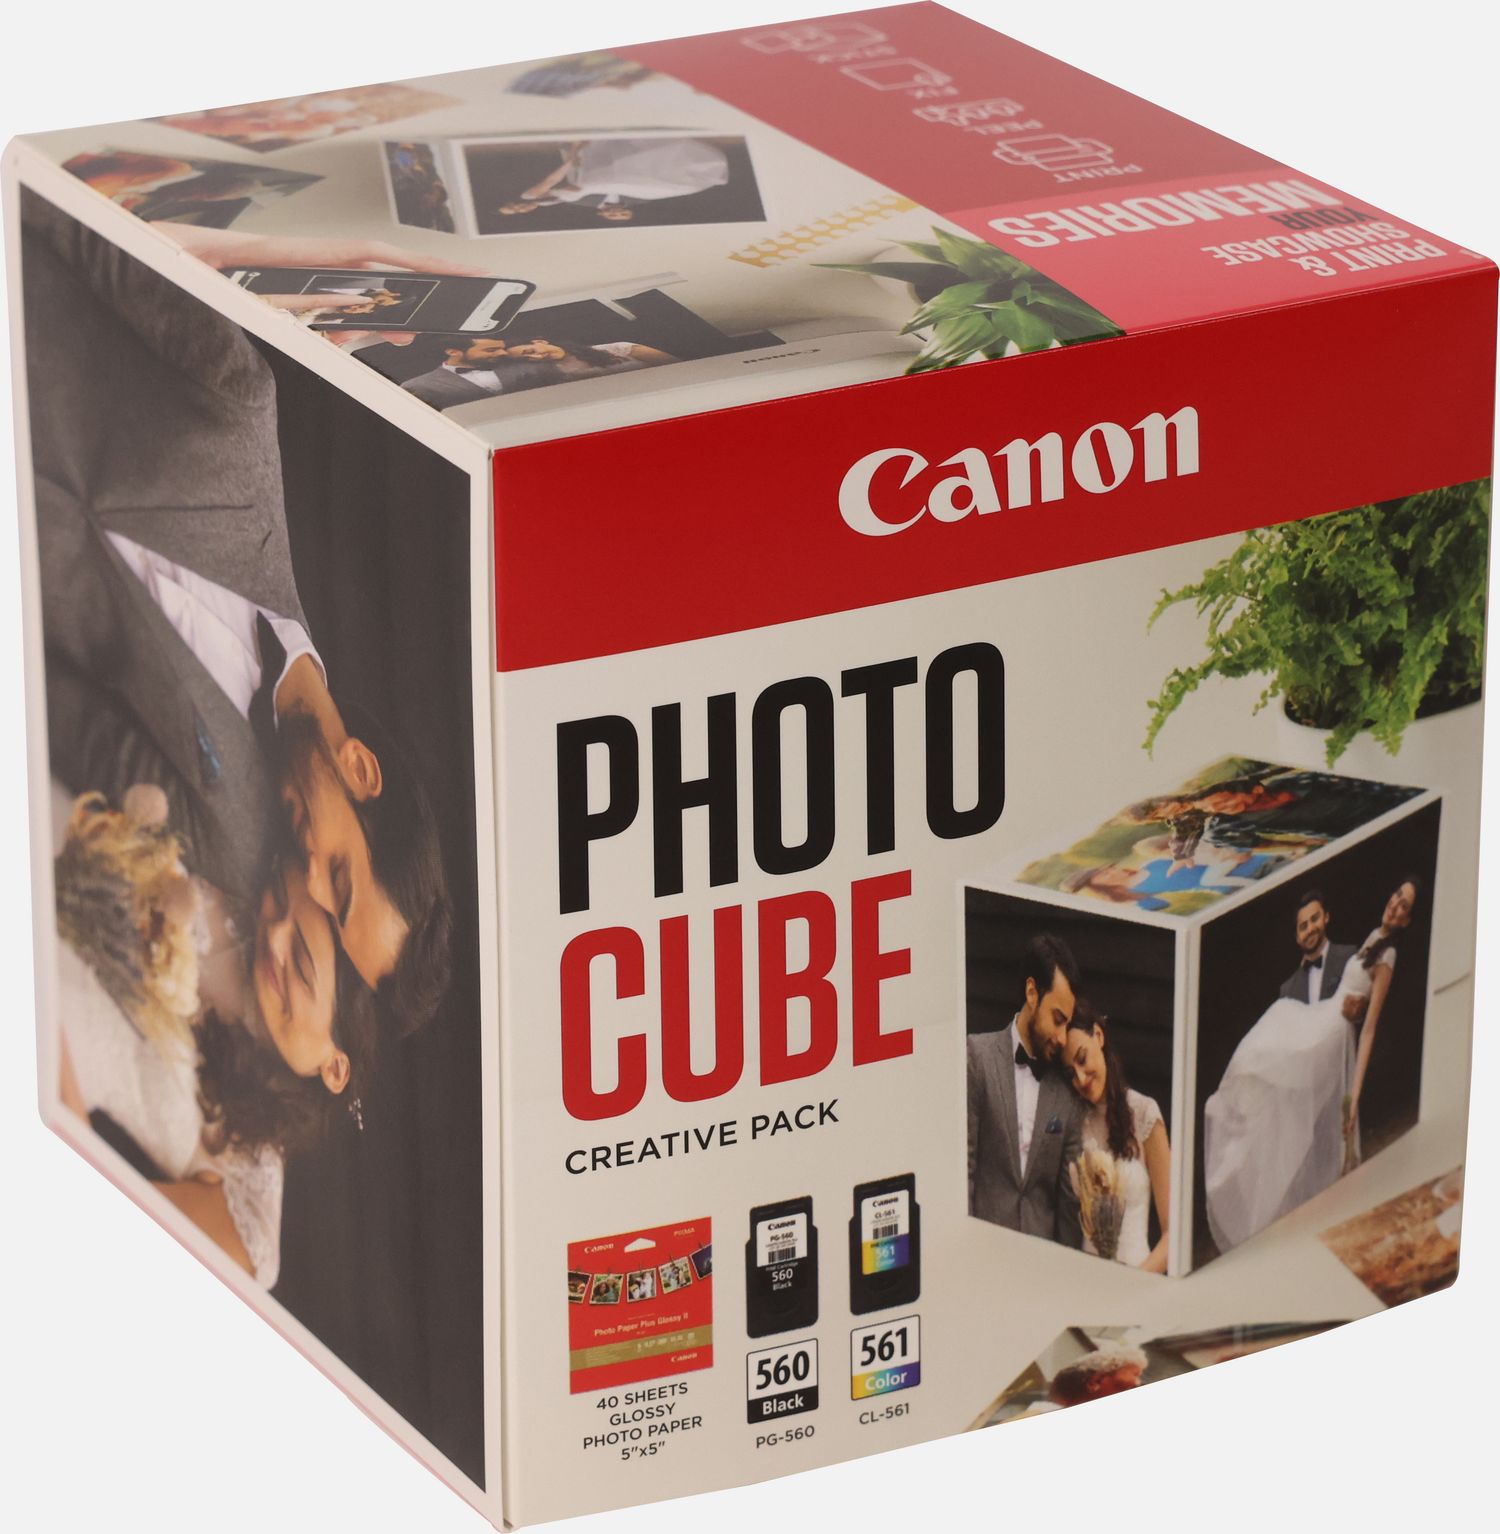 Coffret Canon Photo Cube, avec cartouches d'encre PG-560 et CL-561 et  papier photo glacé Extra II PP-201 13 × 13 cm (40 feuilles) - Pack créatif,  rose — Boutique Canon France